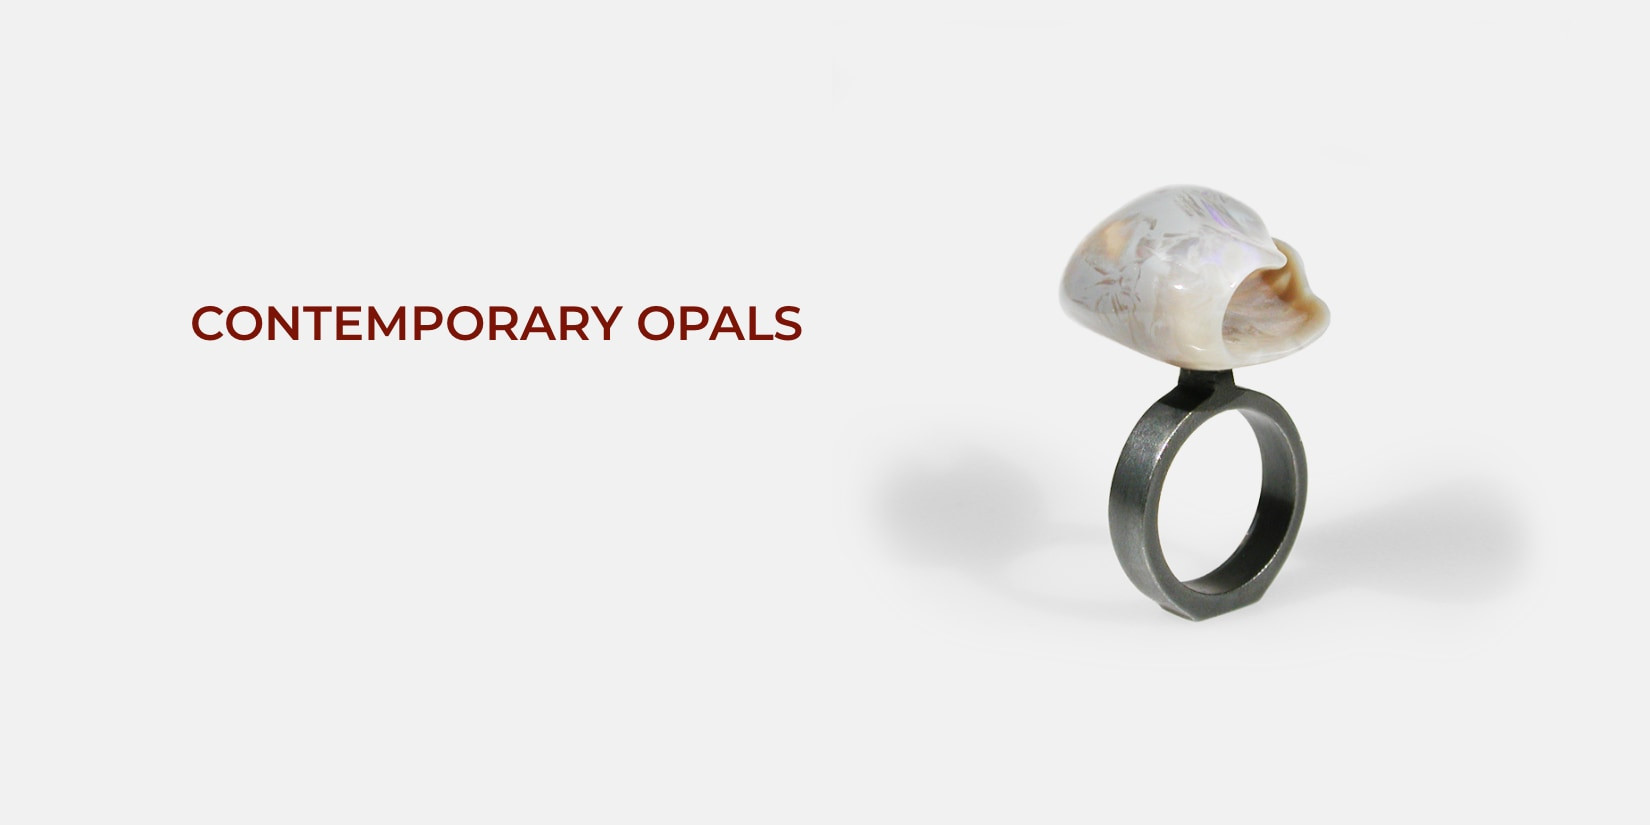 Opal sculpture ring